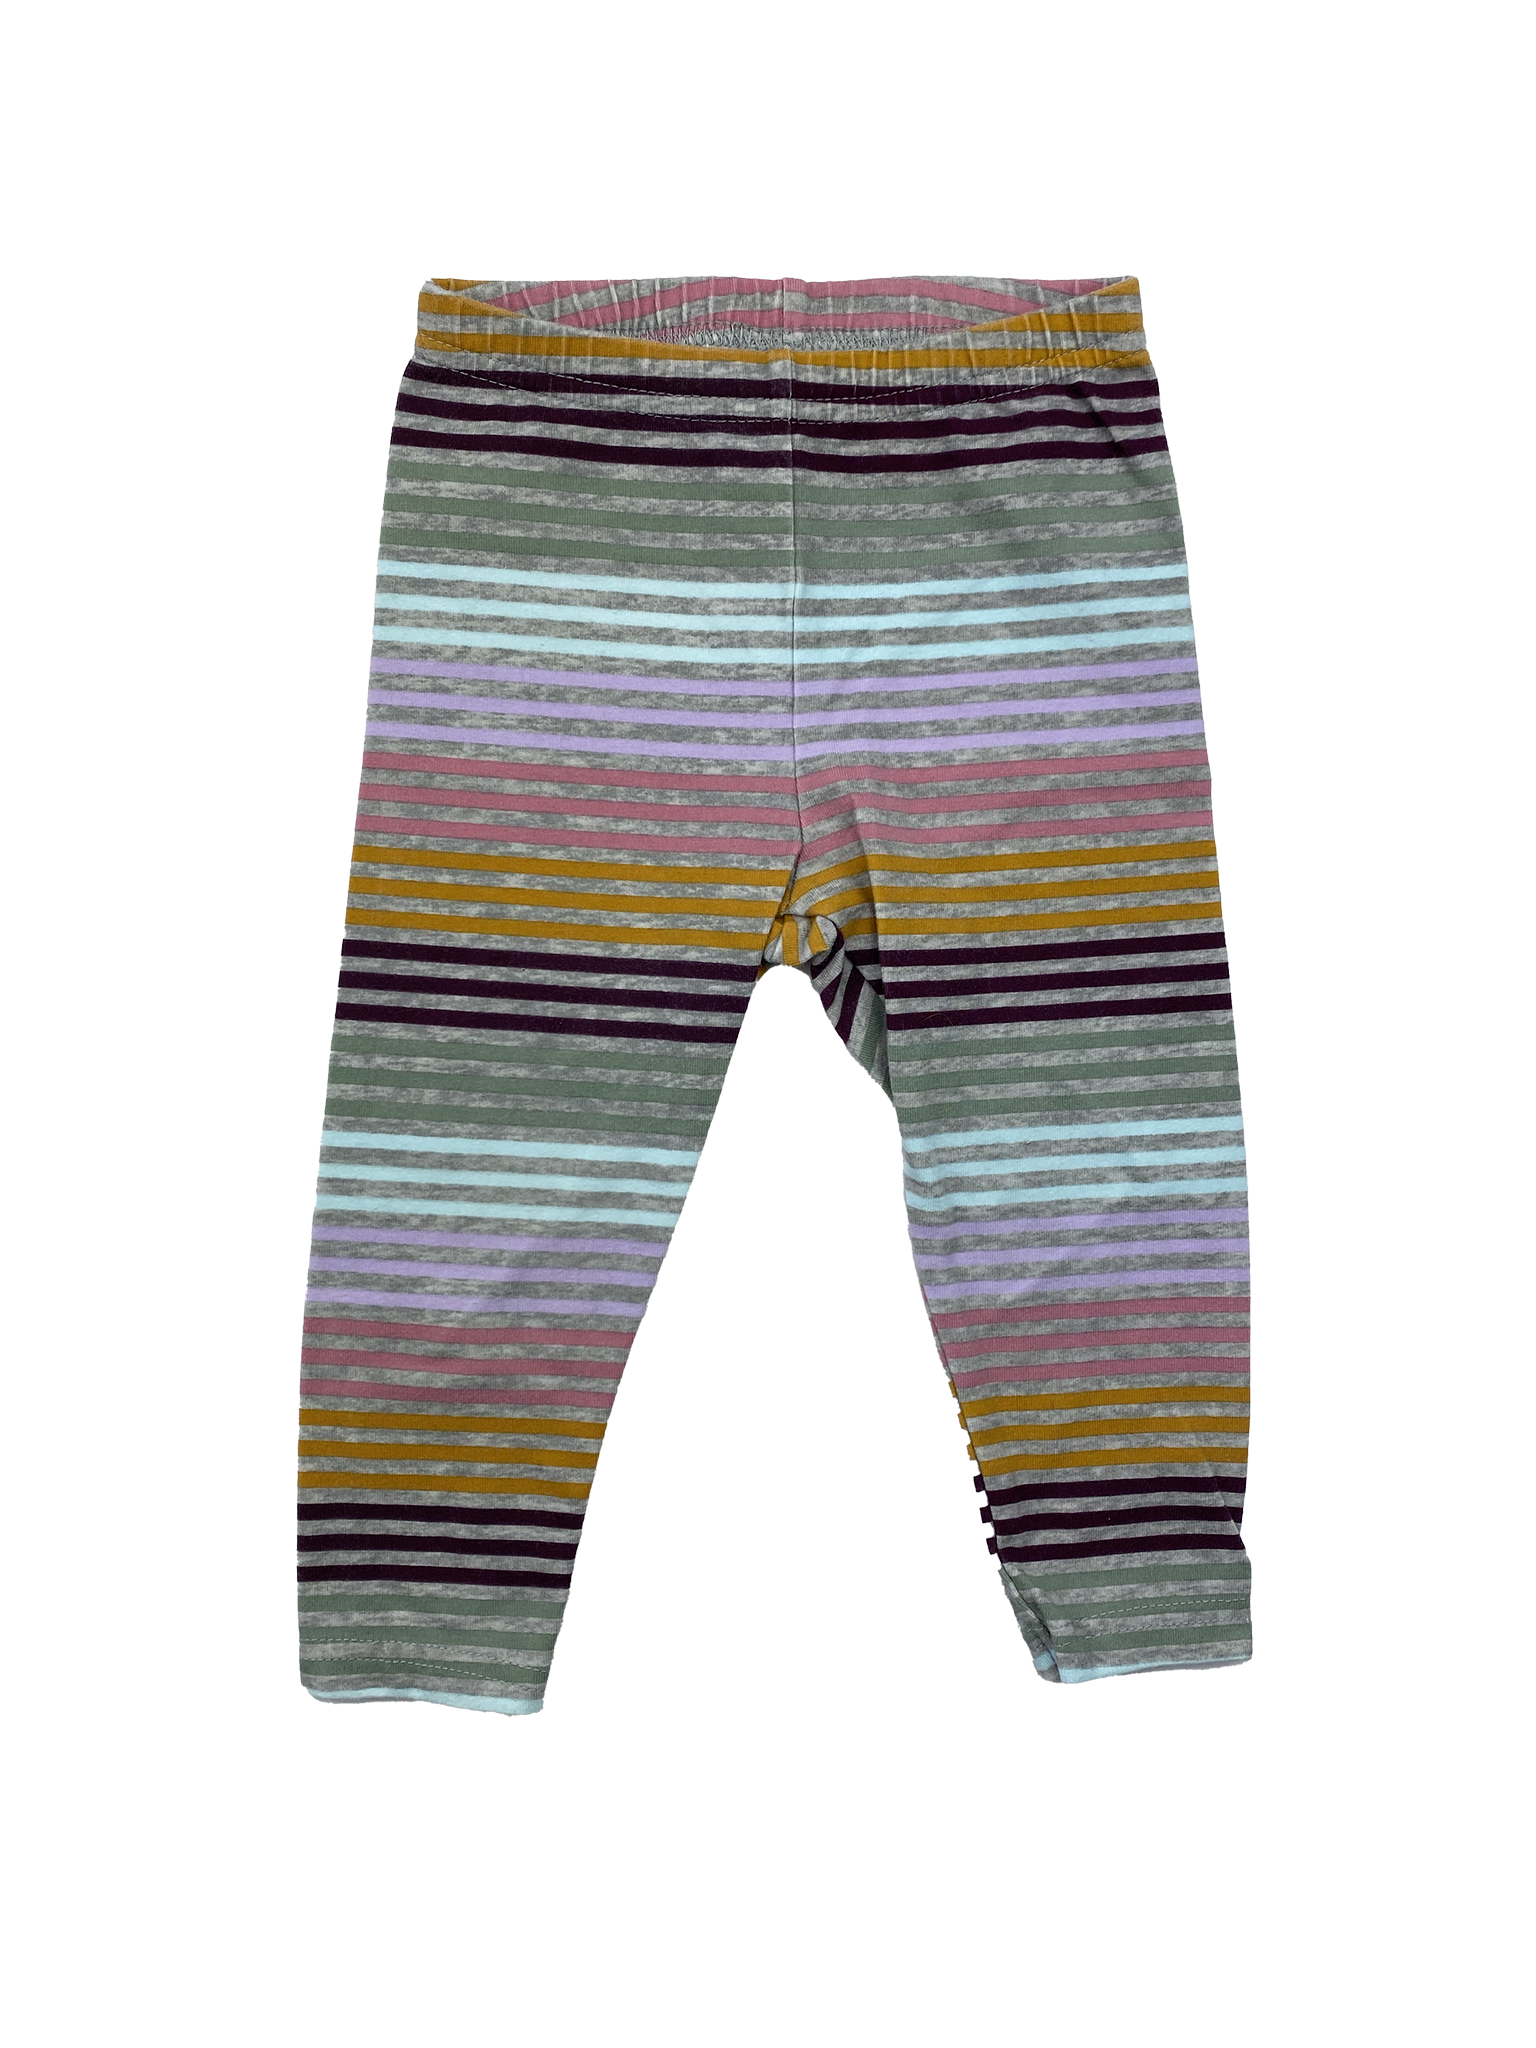 OshKosh Multicoloured Striped Leggings 18M – The Sweet Pea Shop